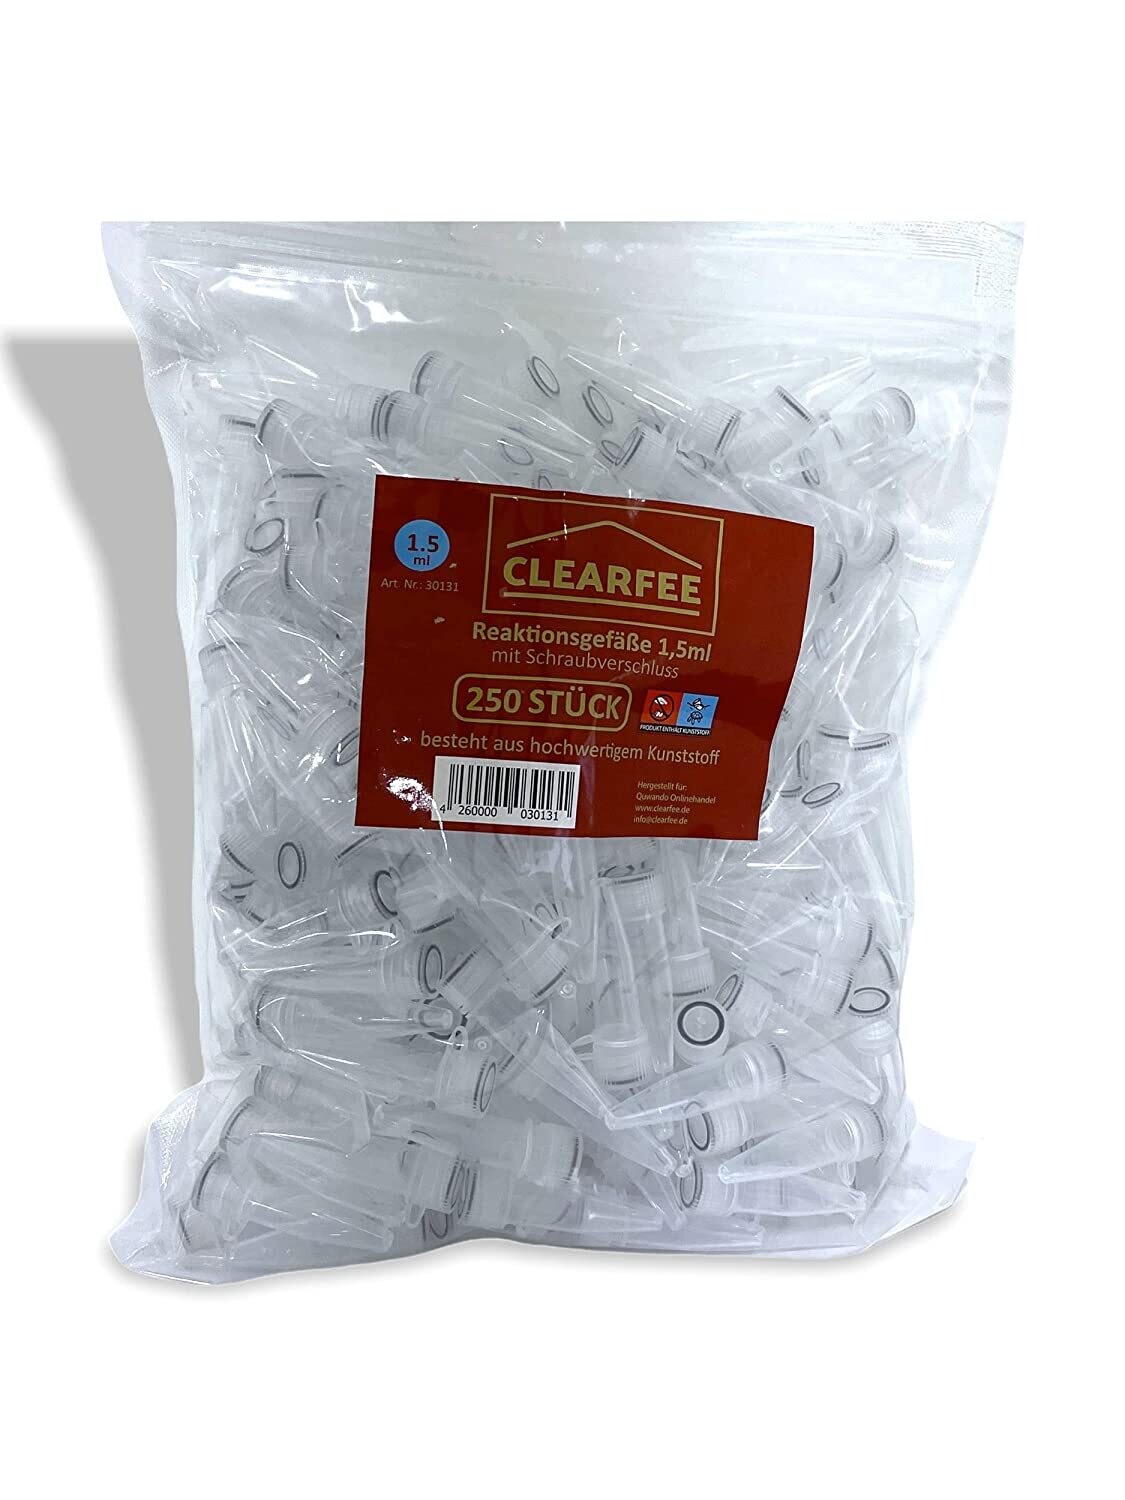 Clearfee Reaktionsgefäße mit Schraubverschluss 250er pack